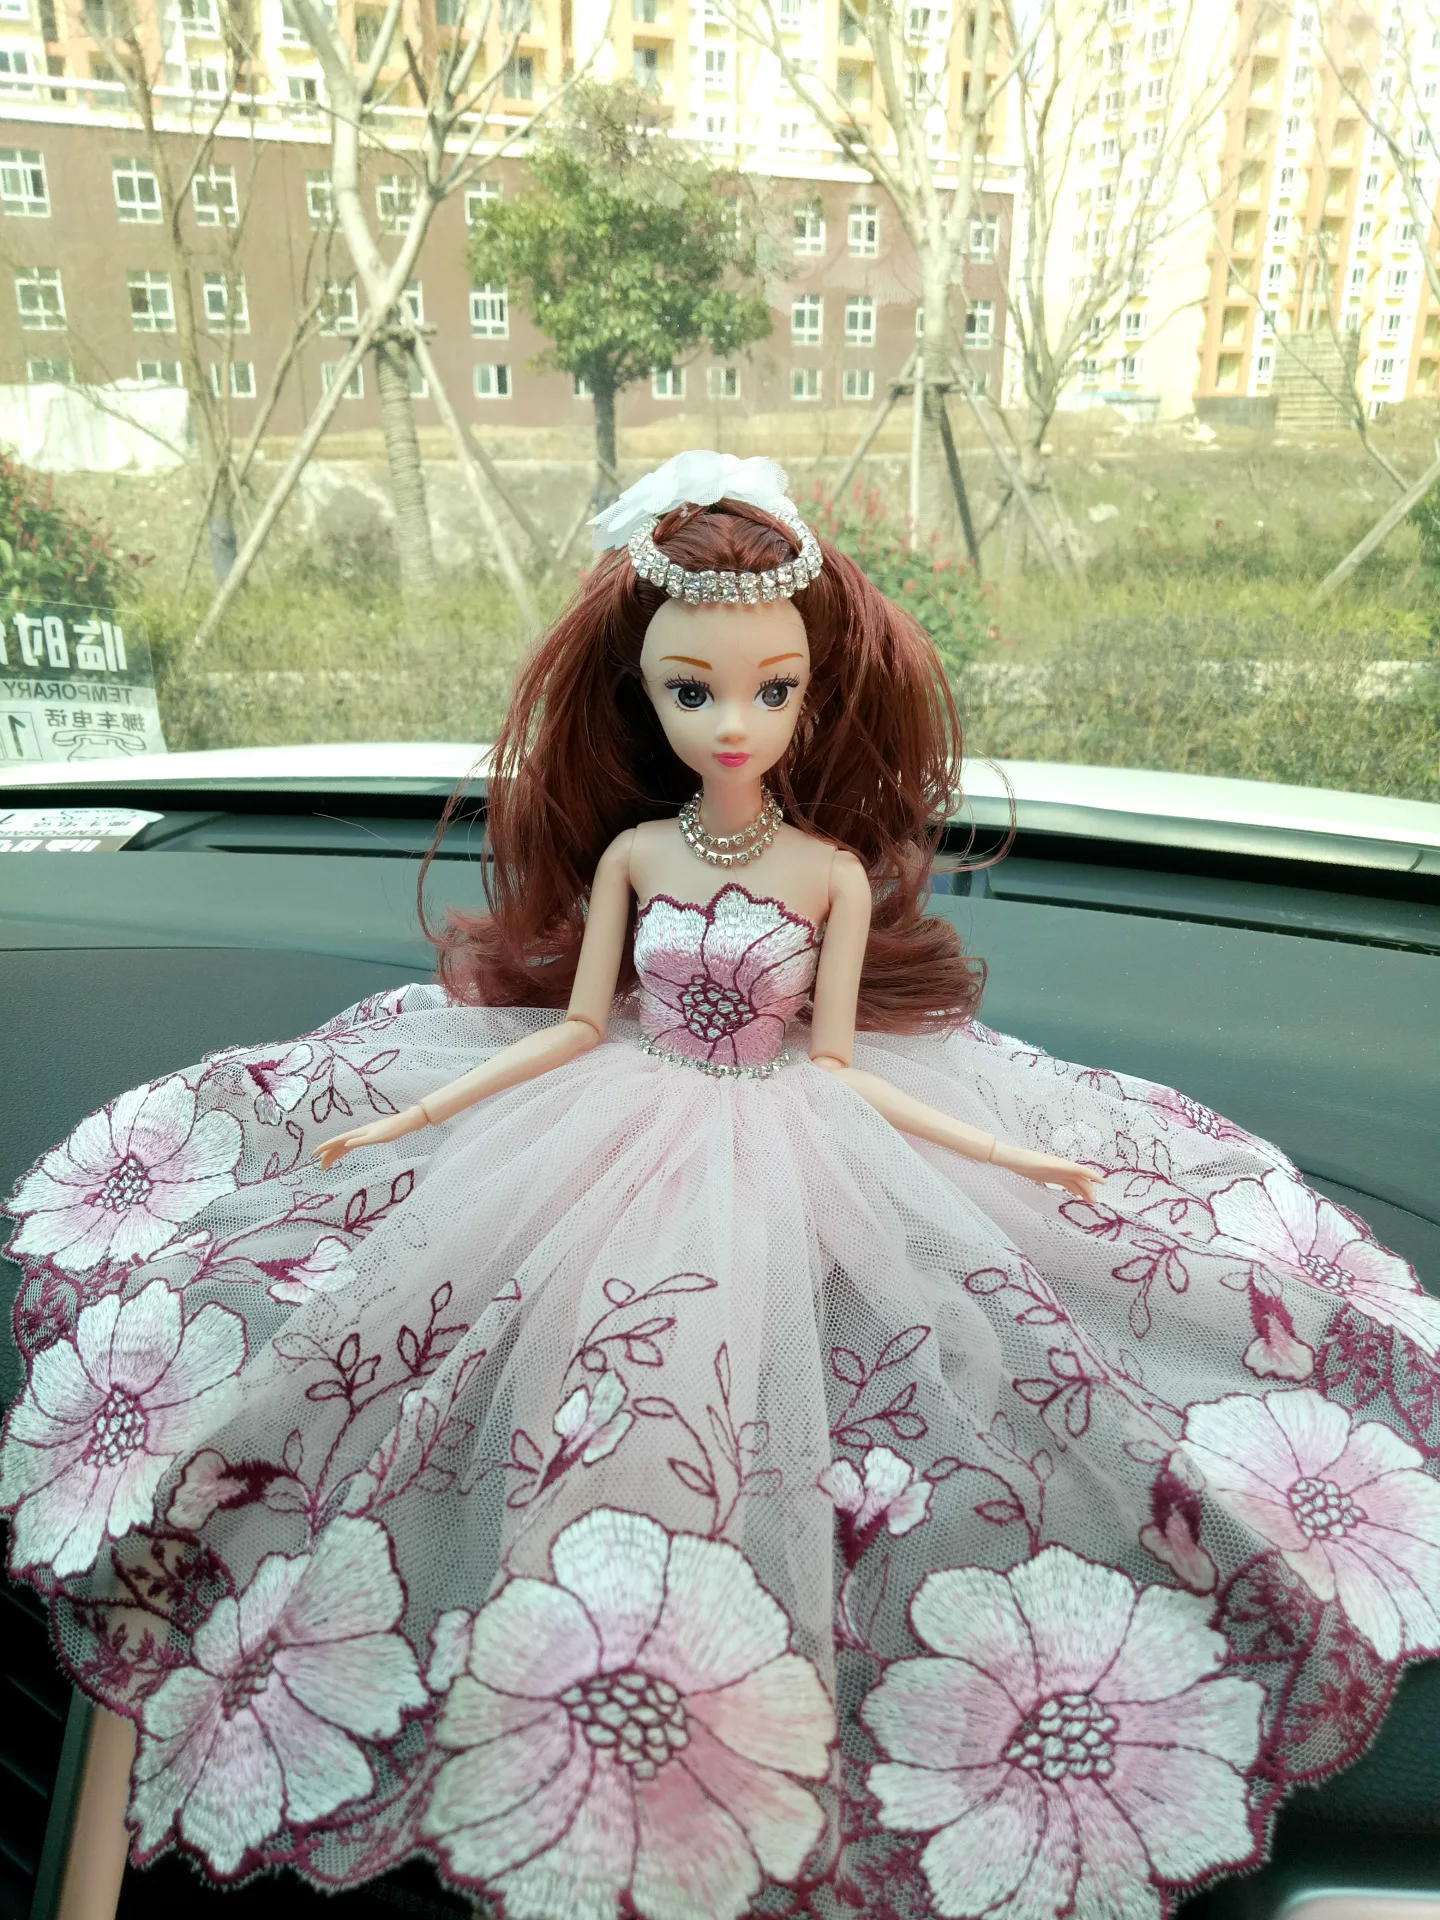 Украшения для приборной панели автомобиля Кукольное свадебное платье кукла набор Бестселлер подарок на день рождения игрушки